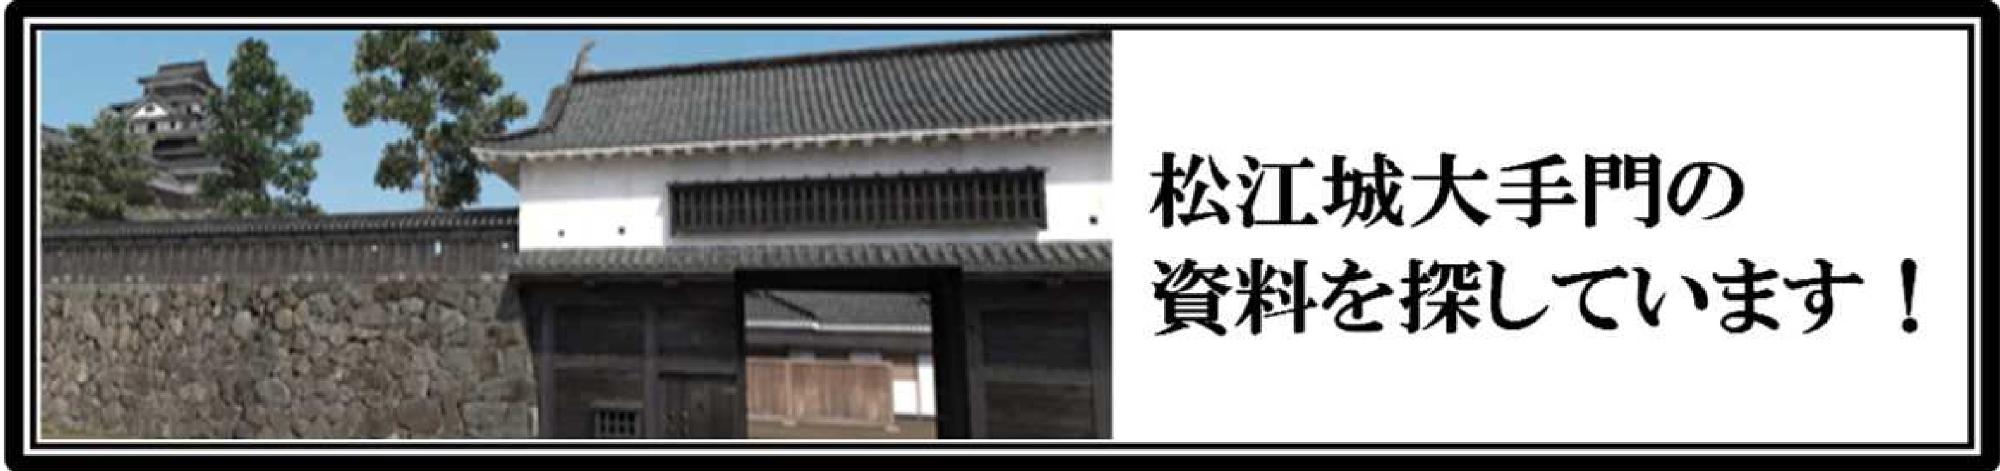 「松江城大手門の資料を探しています」バナー写真